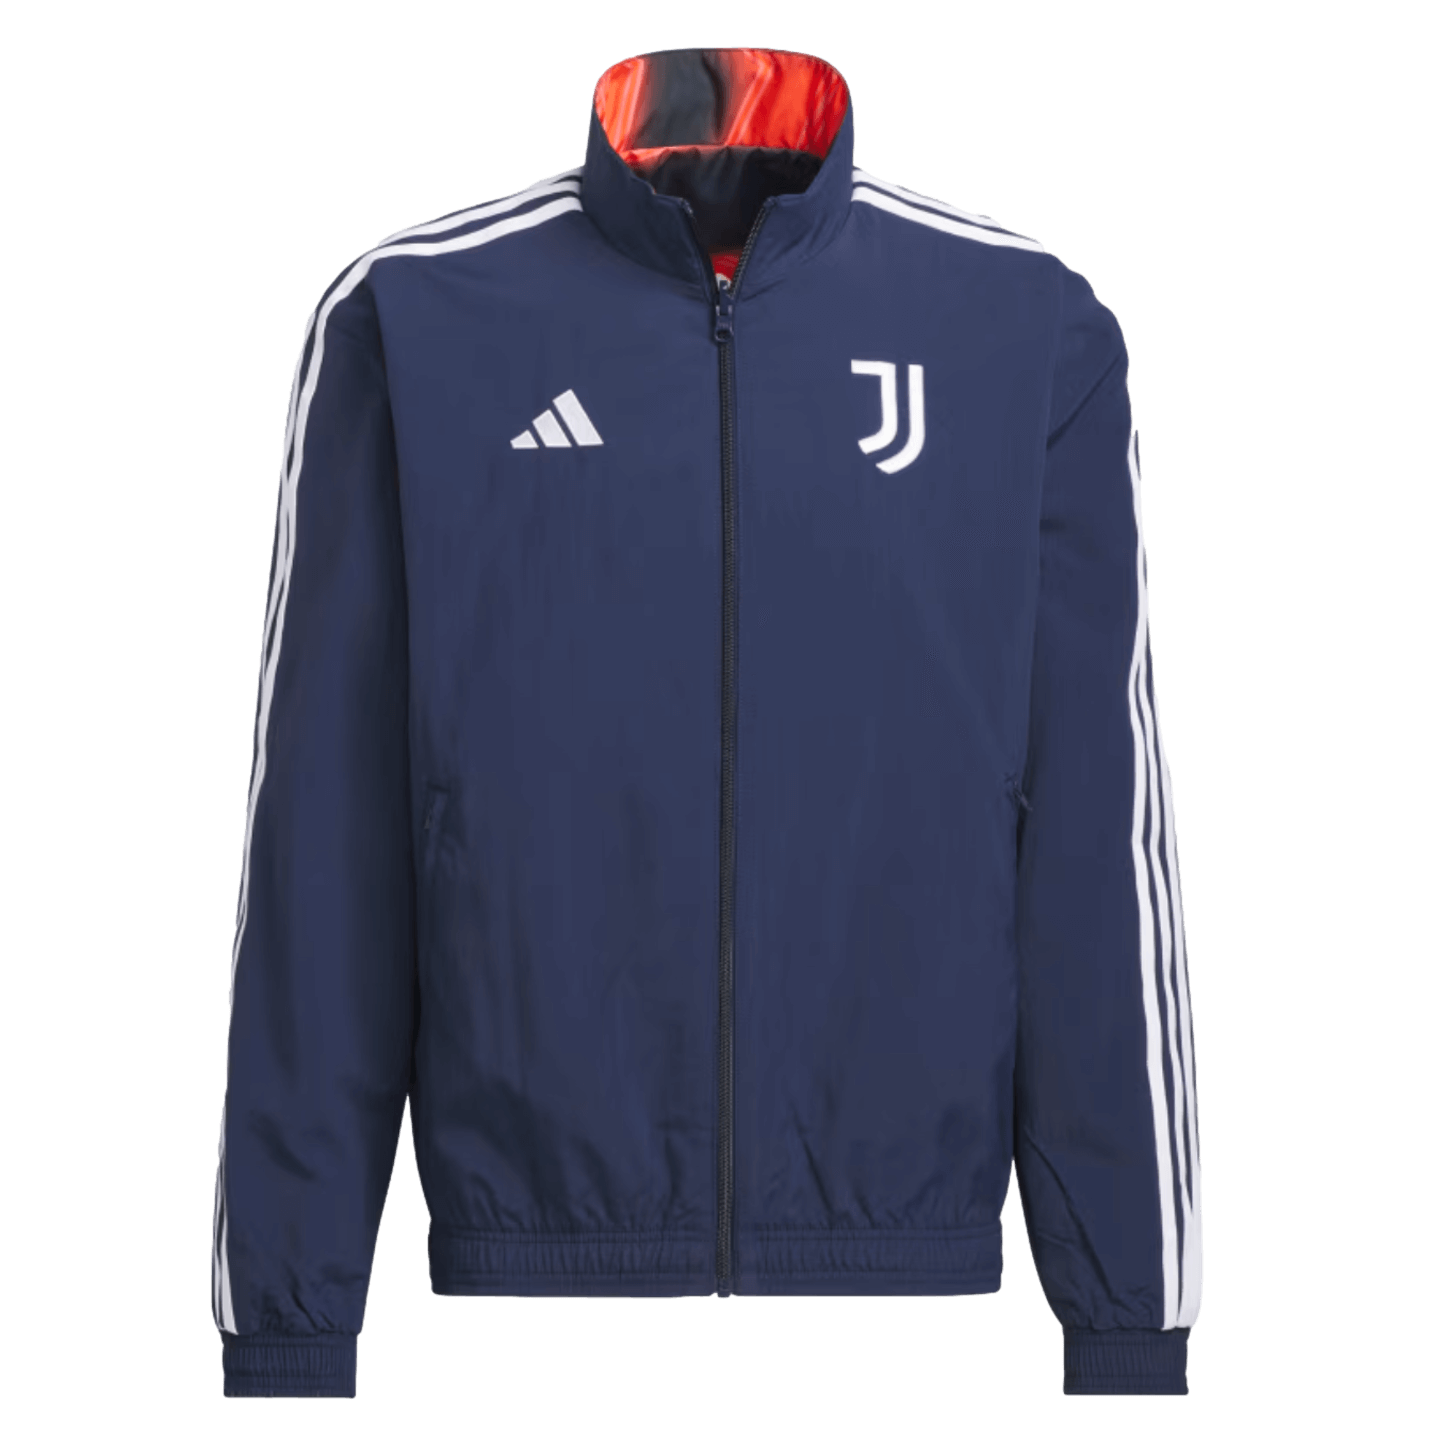 Adidas Chaqueta Himno De La Juventus